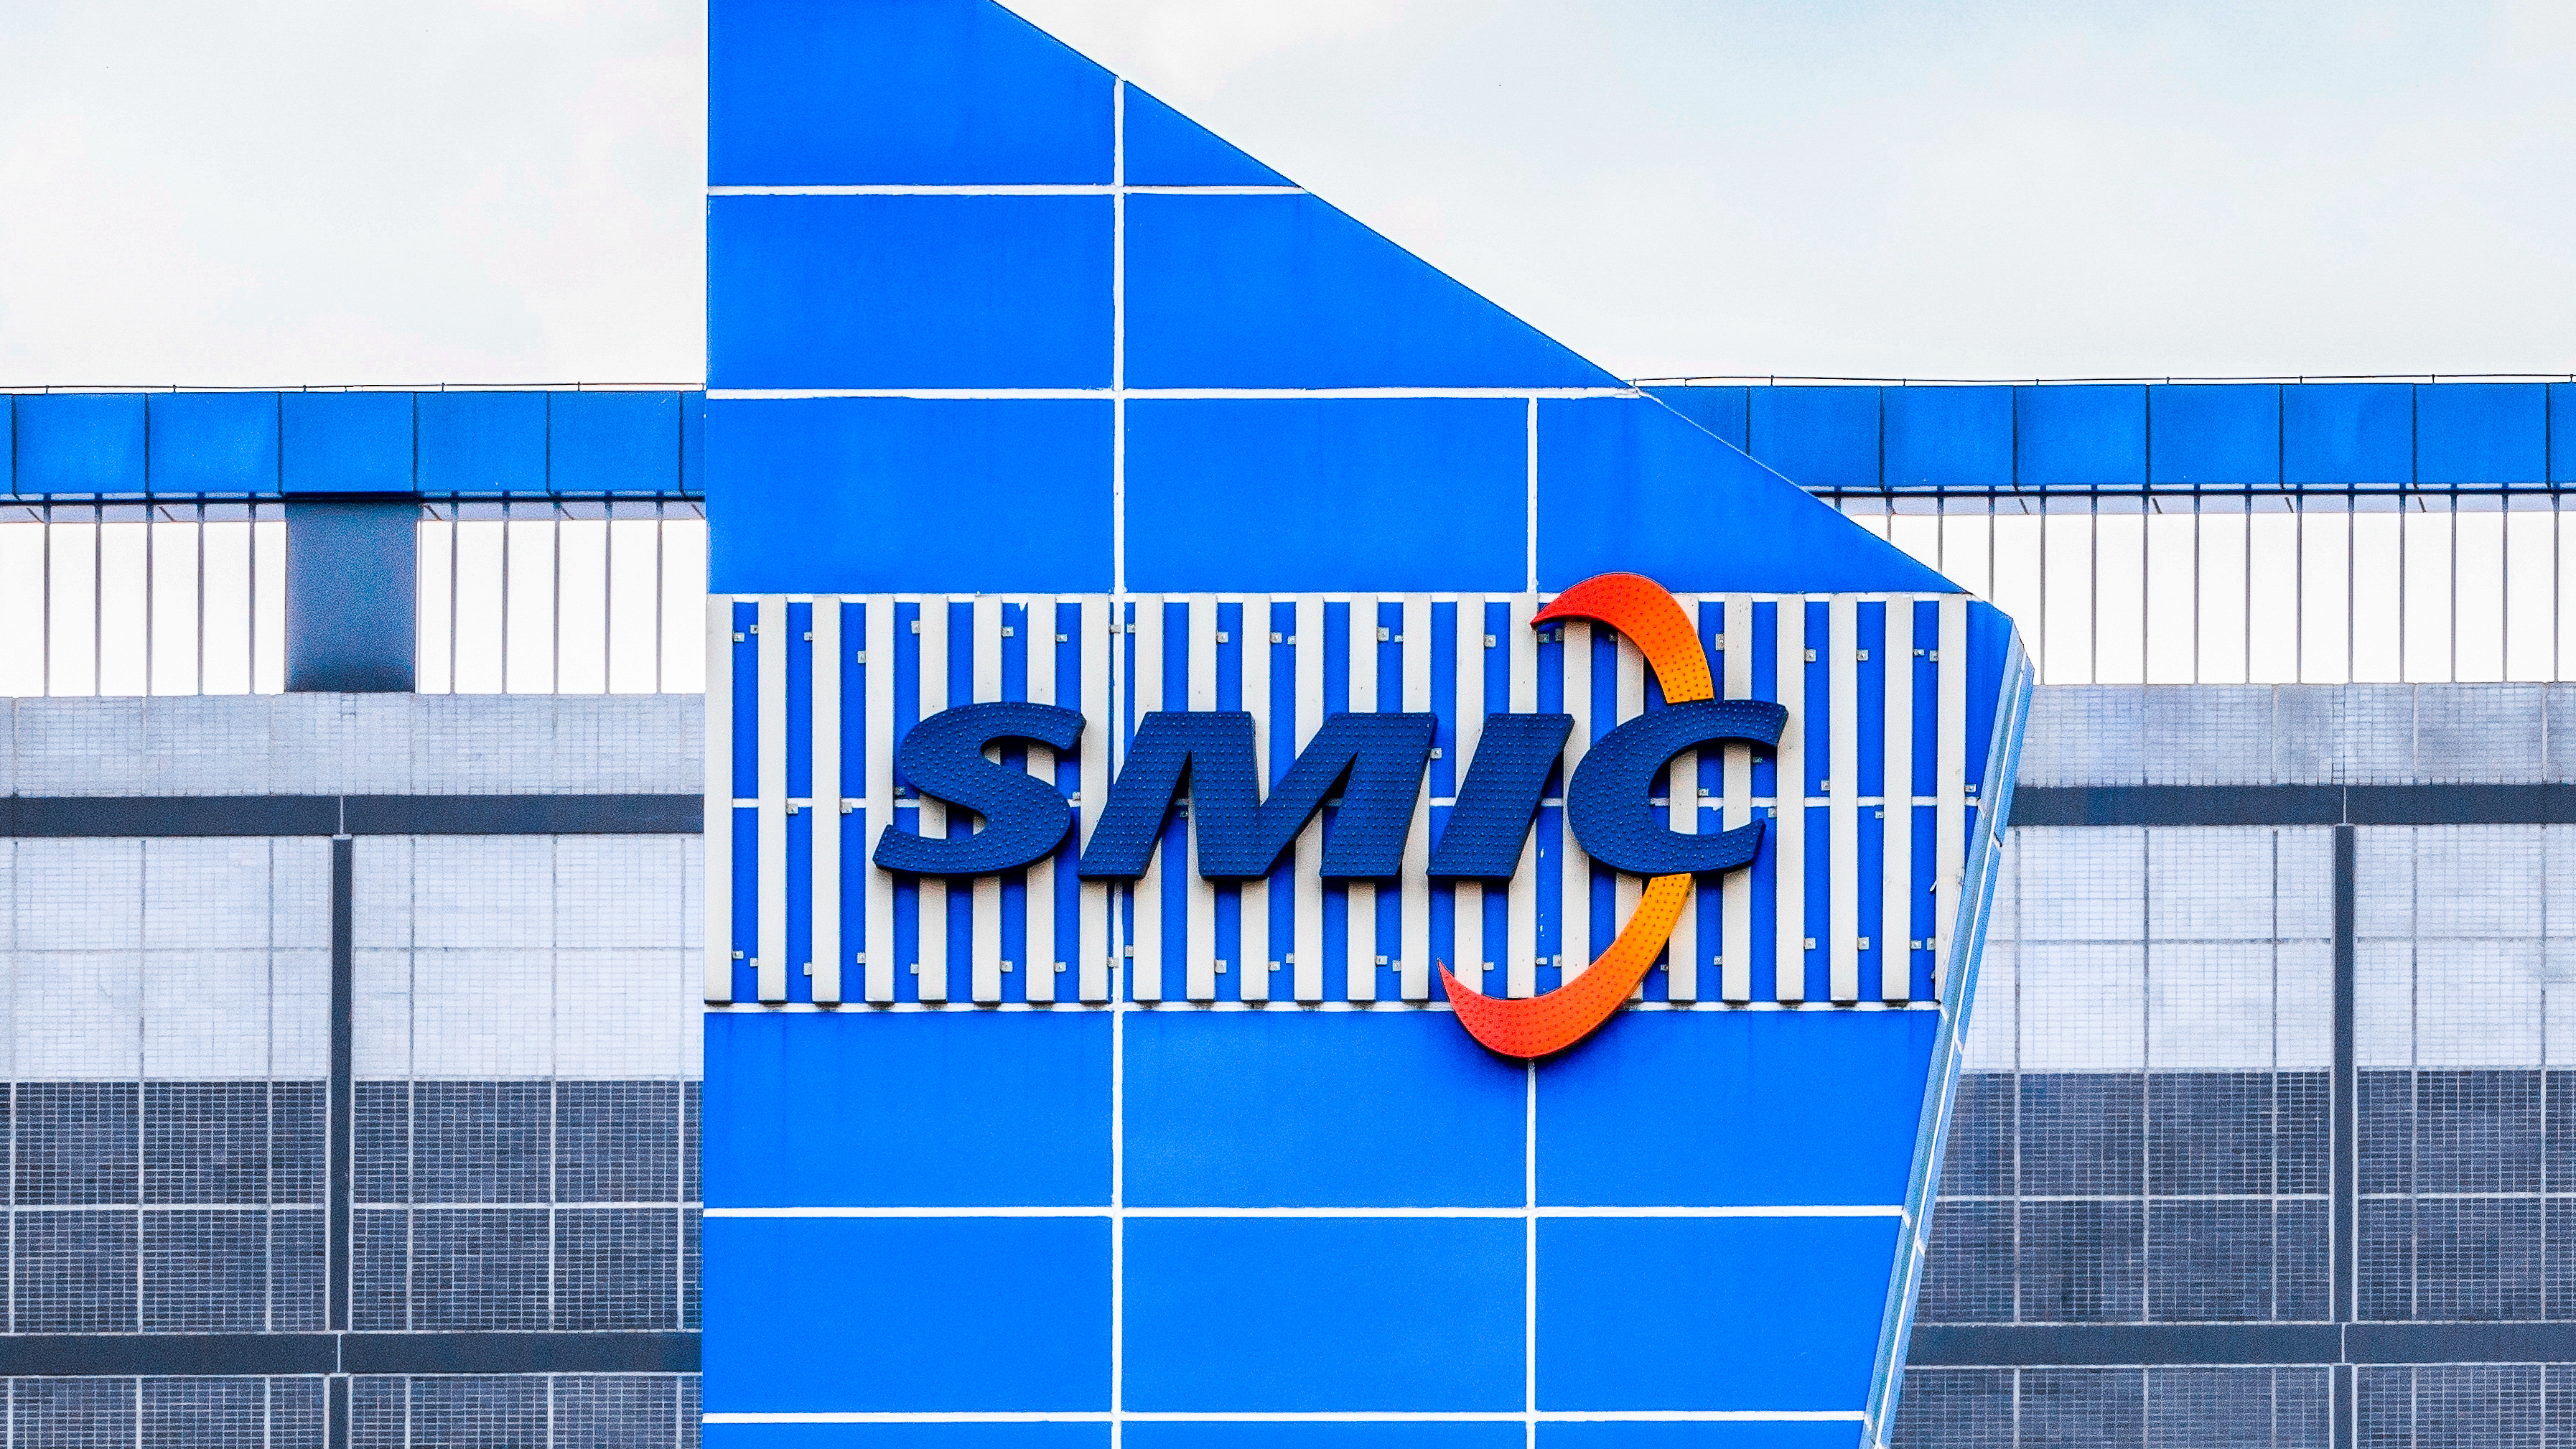 SMIC построит в Шанхае новый завод за 9 миллиардов долларов